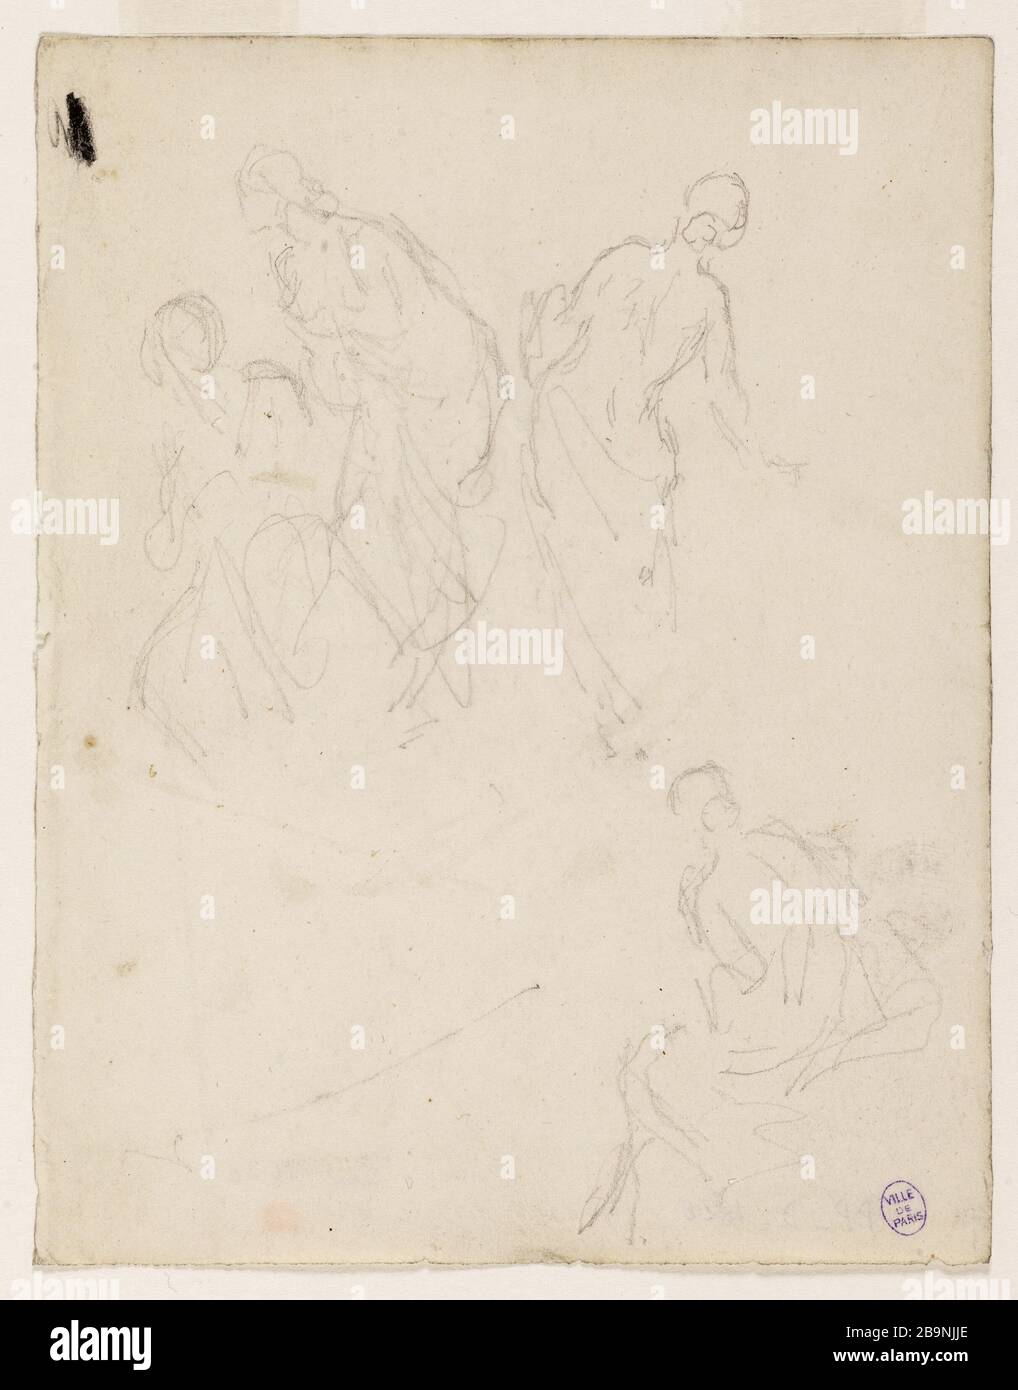 Four sketches of draped women Narcisse Diaz de La Pena (1807-1876). Quatre esquisses de femmes drapées. Crayon graphite sur papier. Musée des Beaux-Arts de la Ville de Paris, Petit Palais. Stock Photo